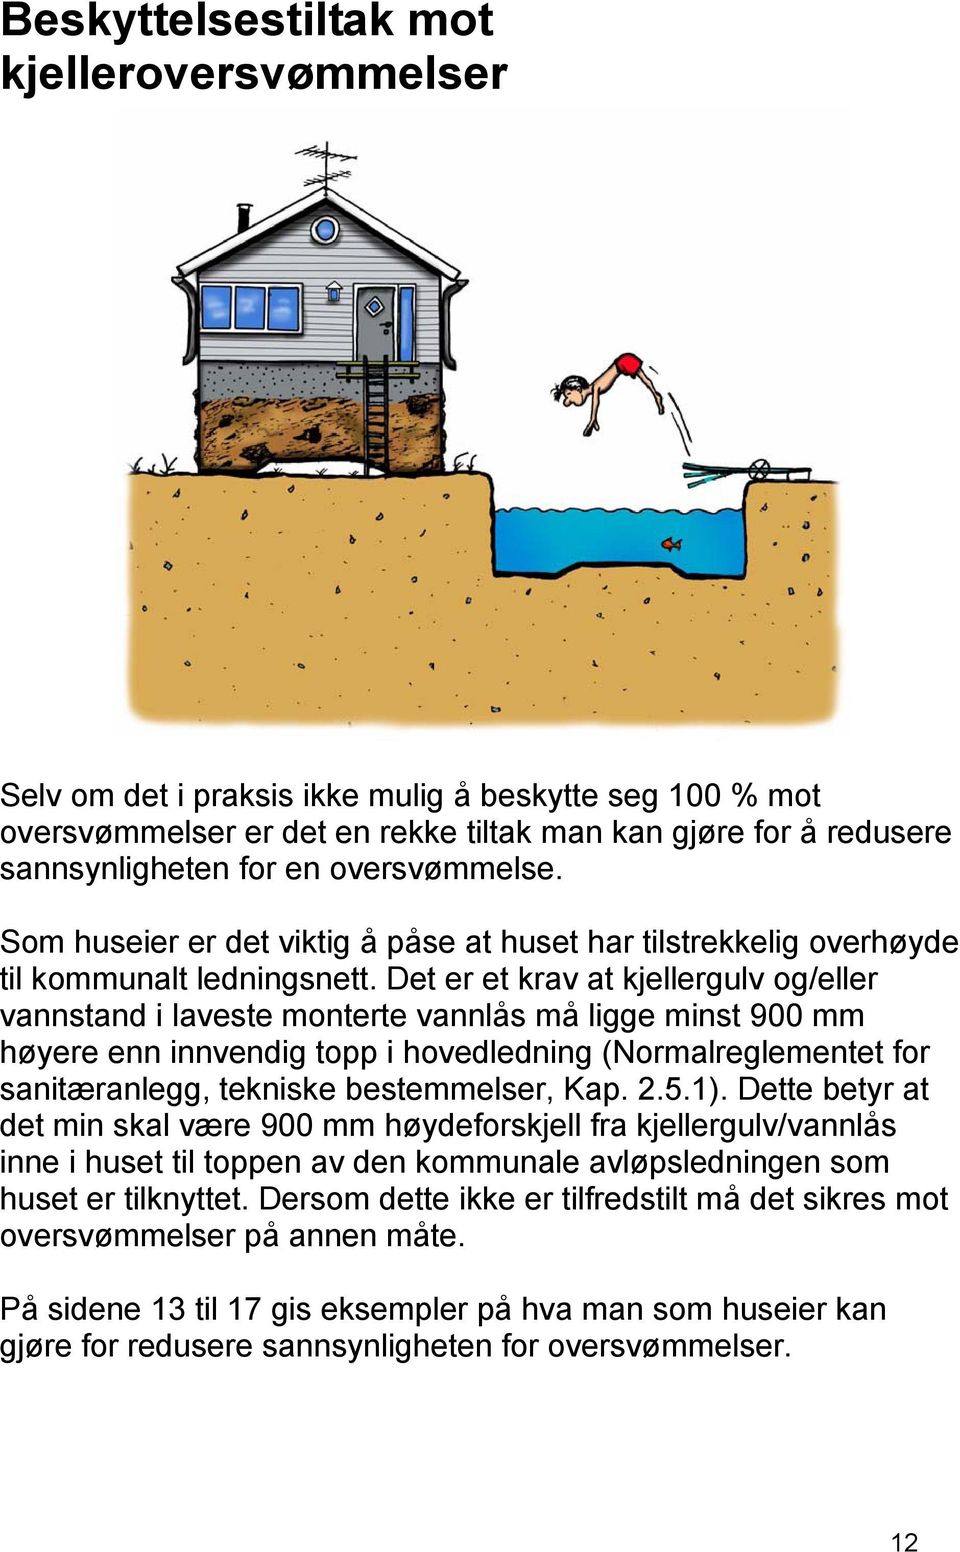 Det er et krav at kjellergulv og/eller vannstand i laveste monterte vannlås må ligge minst 900 mm høyere enn innvendig topp i hovedledning (Normalreglementet for sanitæranlegg, tekniske bestemmelser,